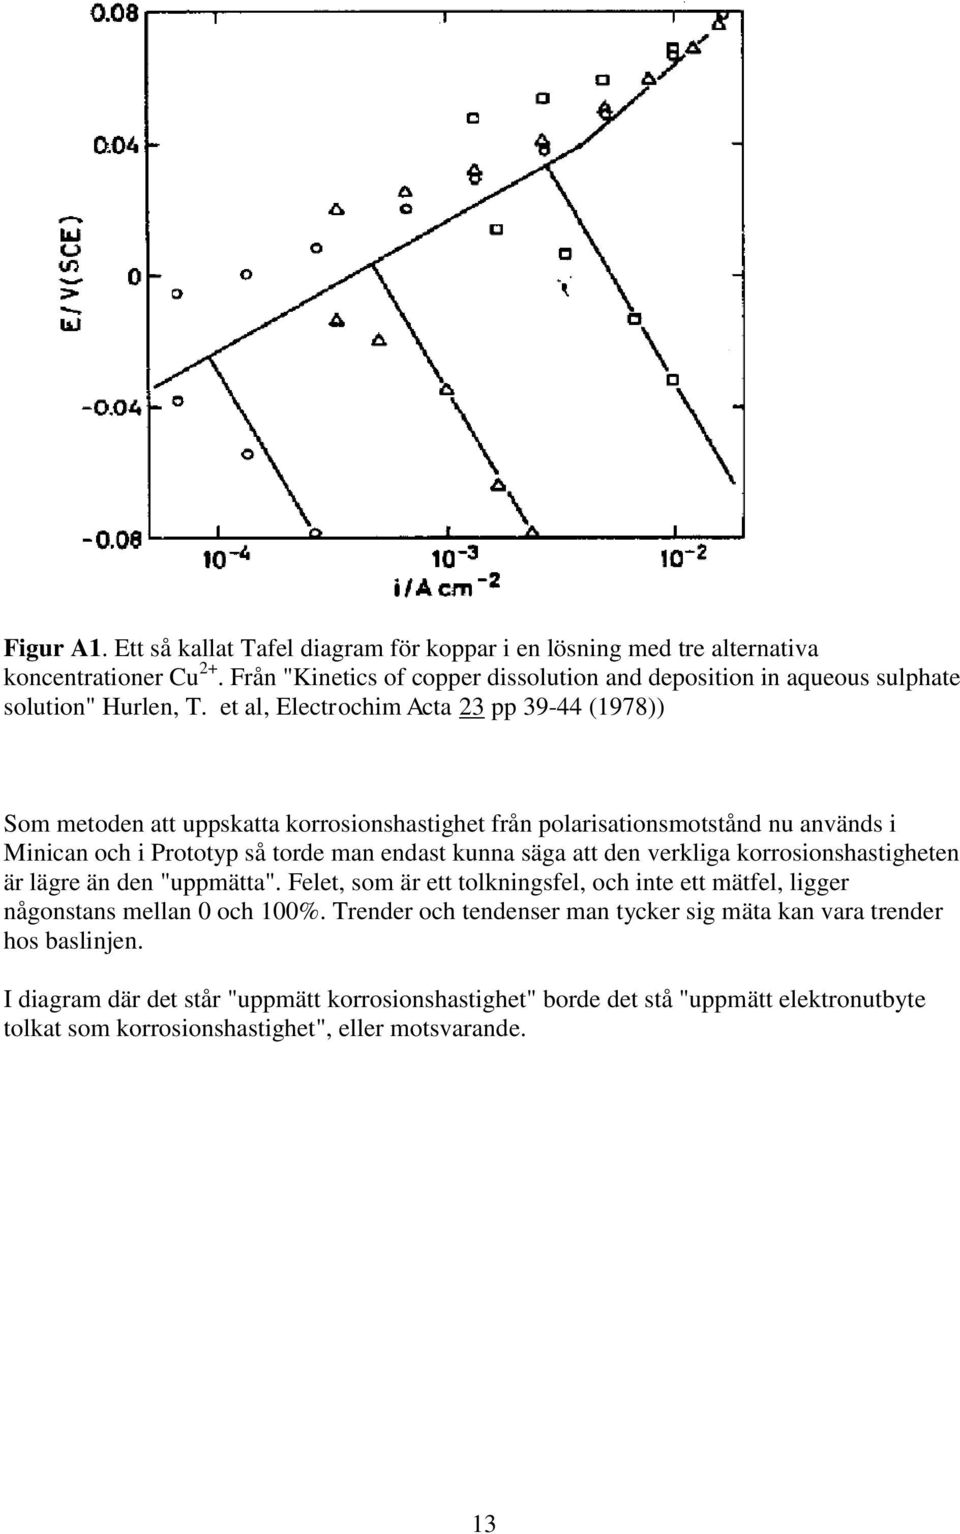 et al, Electrochim Acta 23 pp 39-44 (1978)) Som metoden att uppskatta korrosionshastighet från polarisationsmotstånd nu används i Minican och i Prototyp så torde man endast kunna säga att